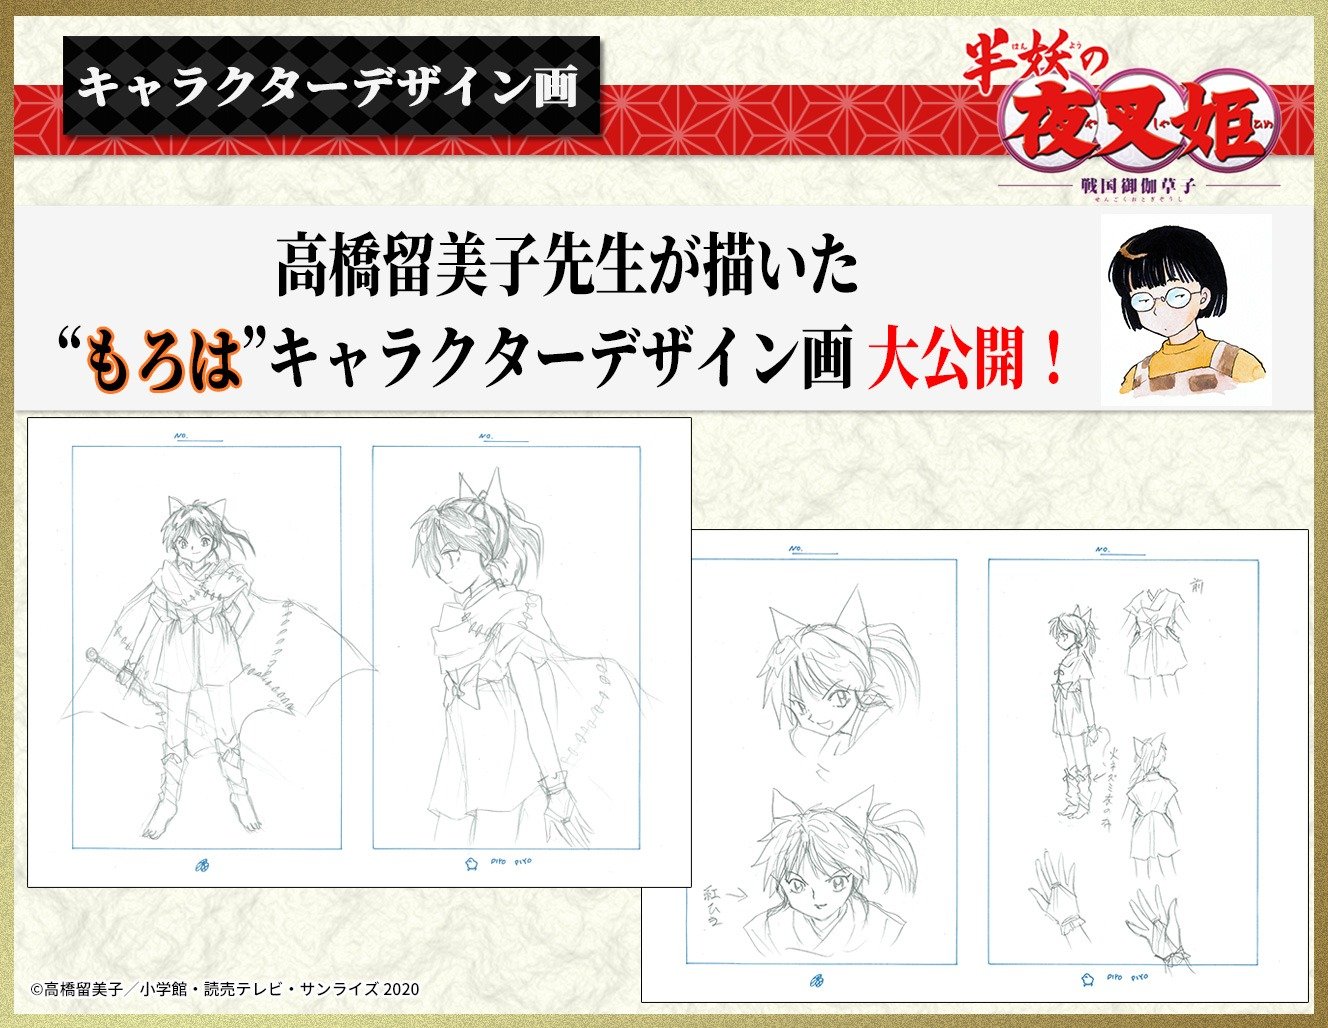 Hanyo no Yashahime  Design de personagens do spin-off de